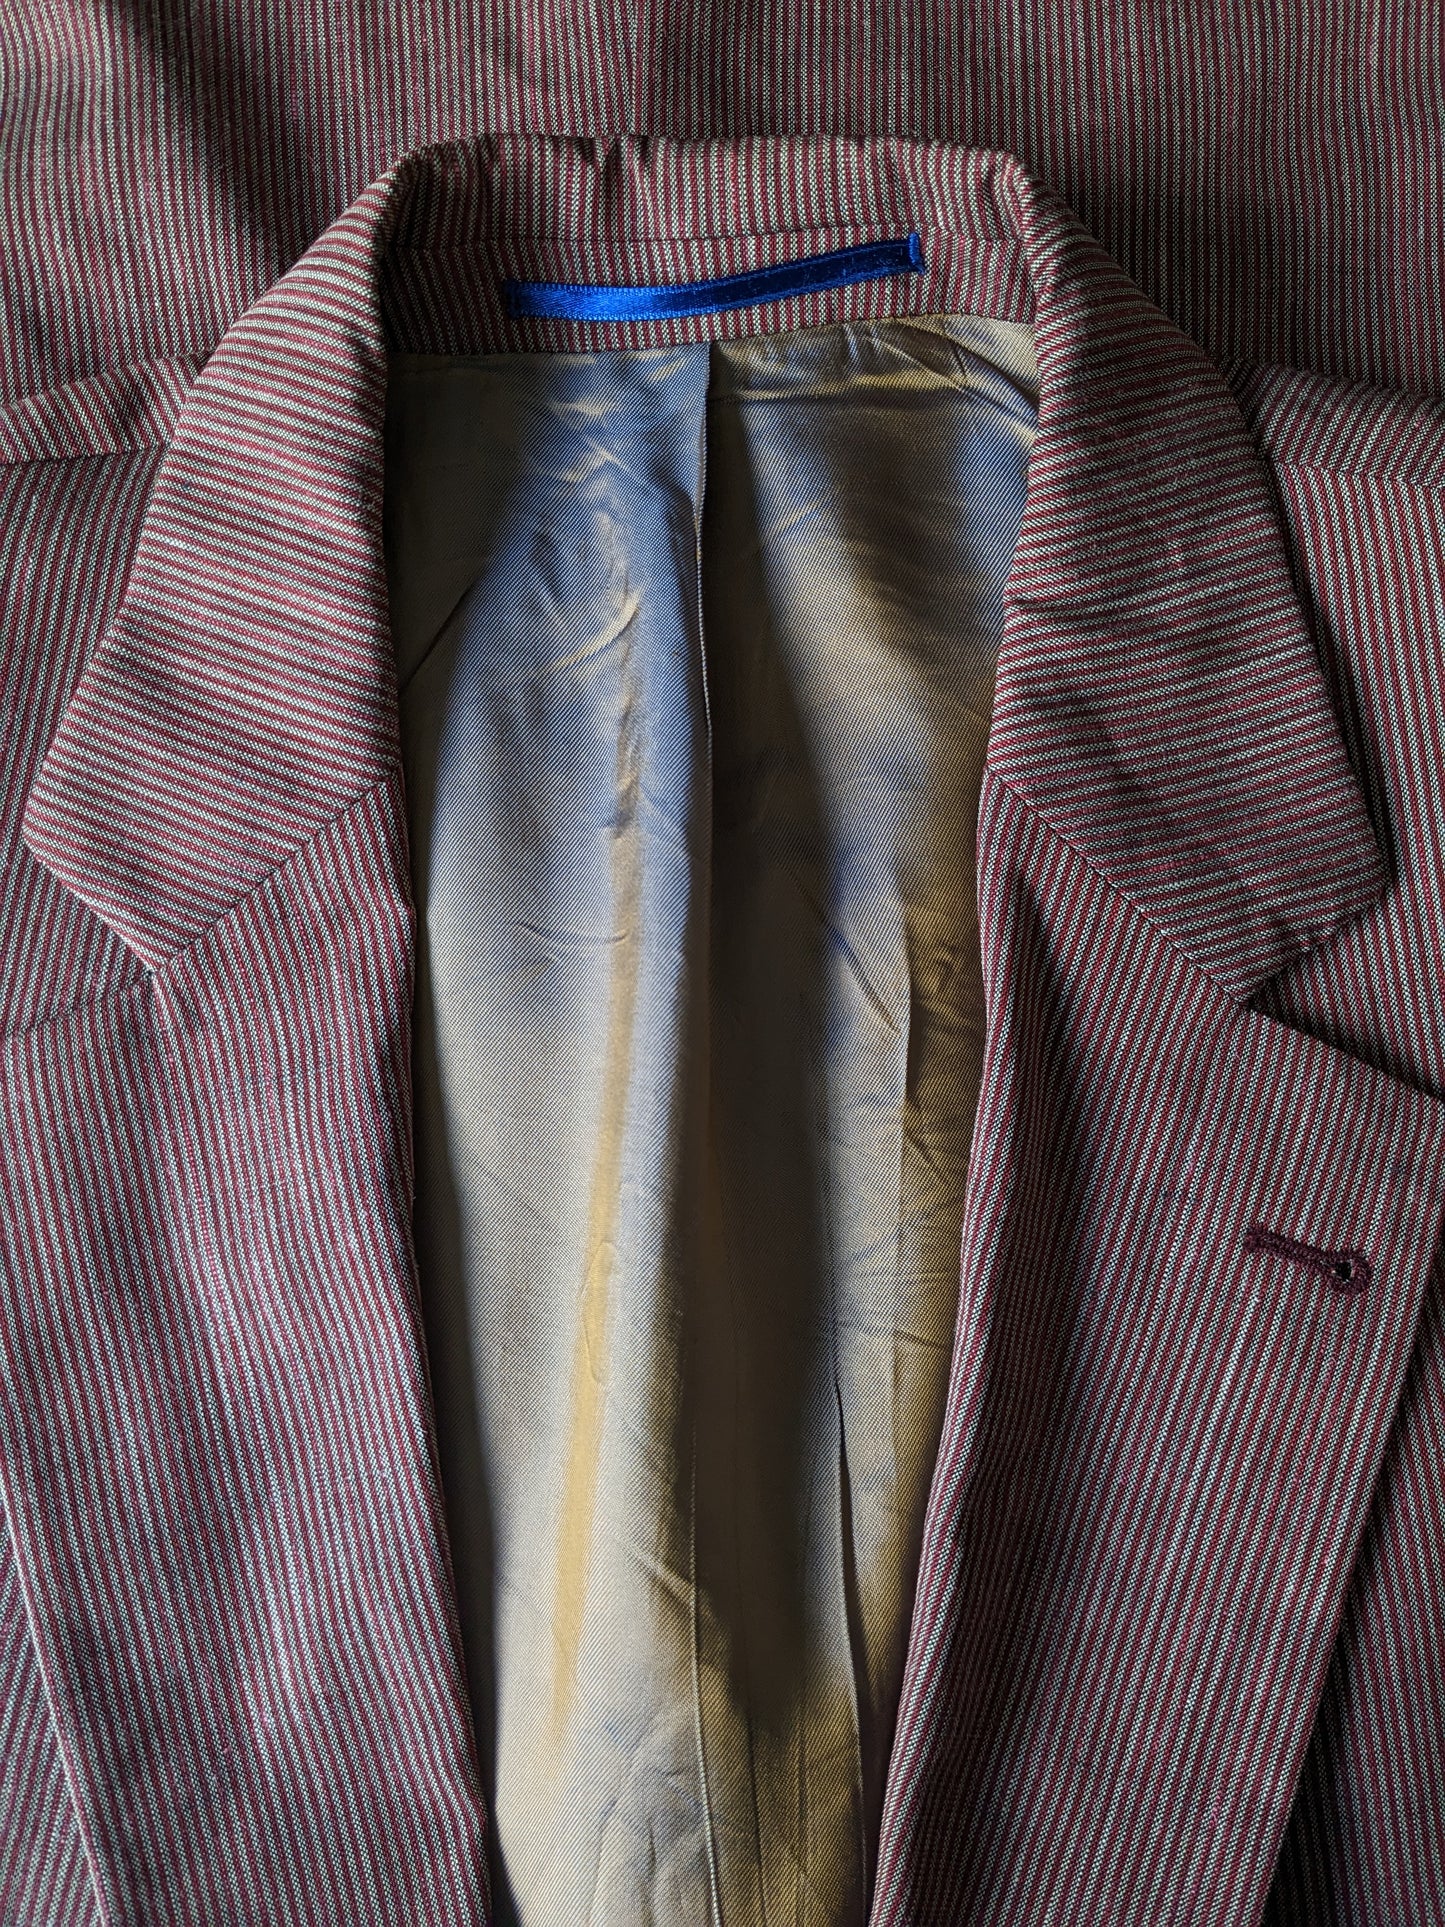 Veste en soie en lin en laine Bogart. Rayé rouge gris. Taille 52 / L.